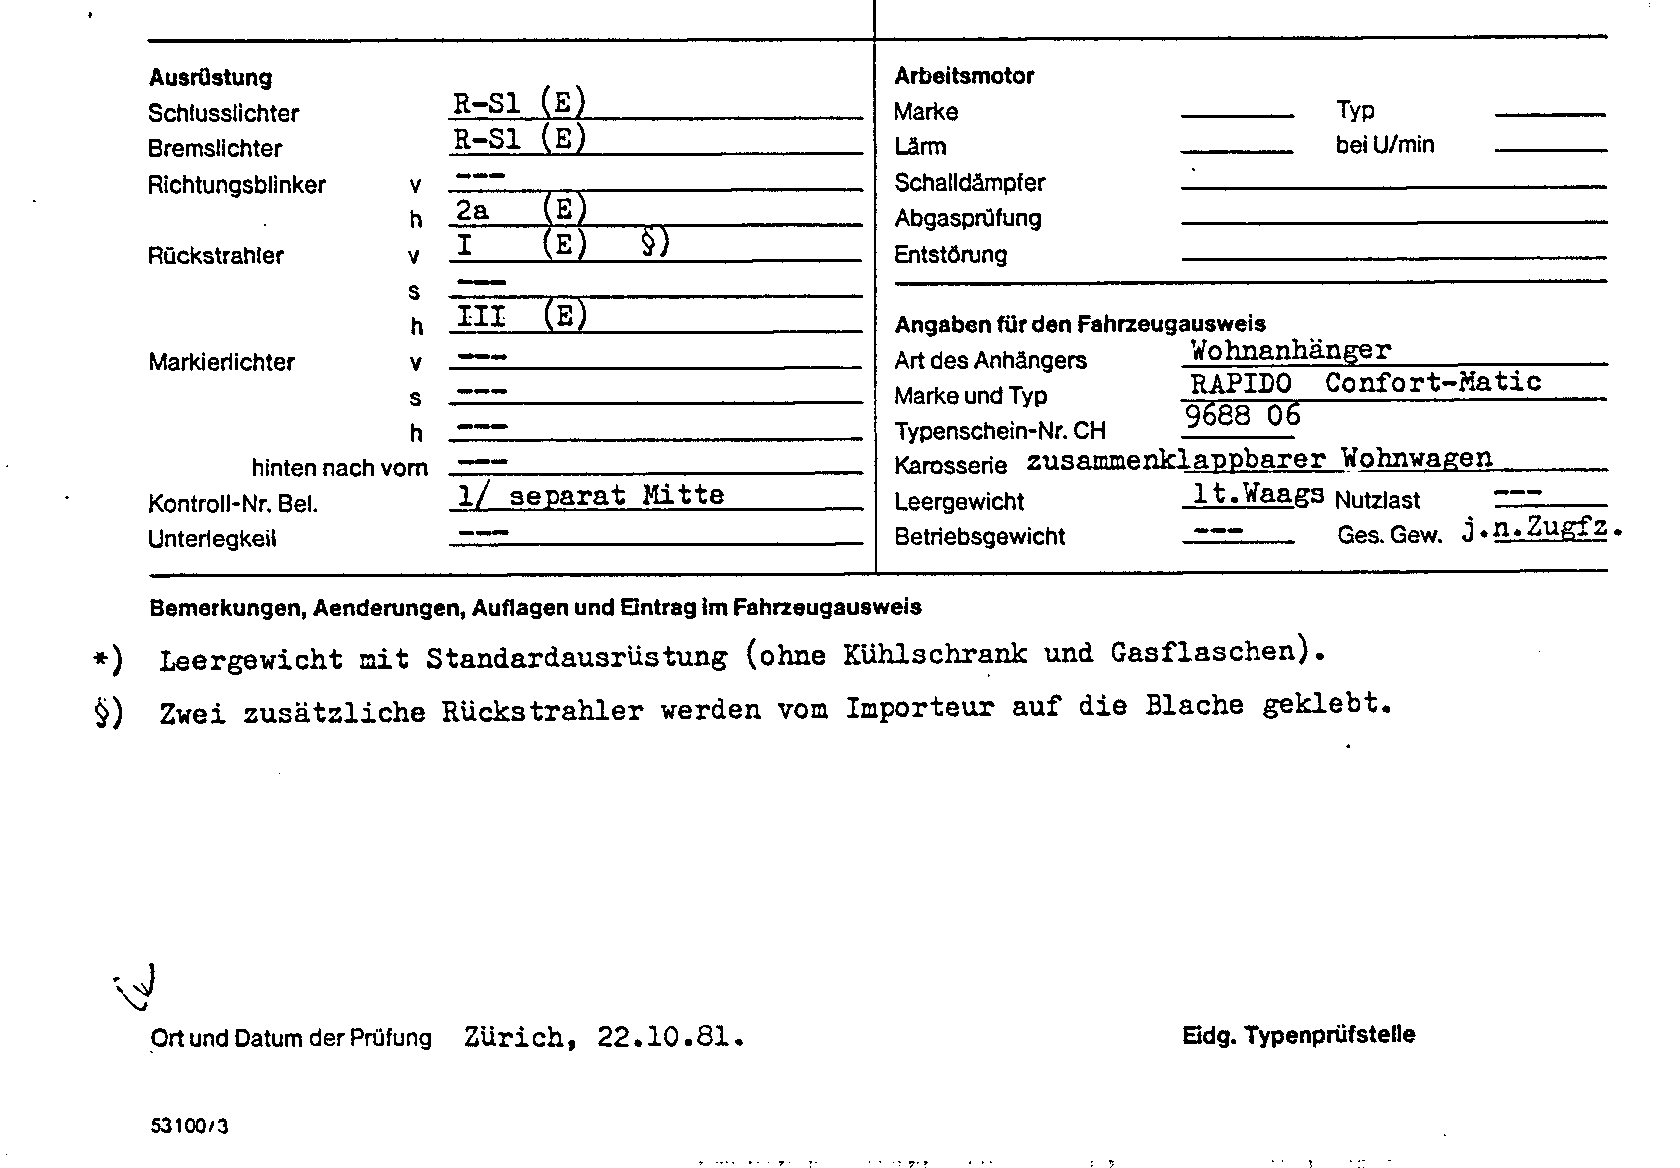 Swiss Certificate of Conformity 968806 German Page 2 (TG.DE.968806.2.png)